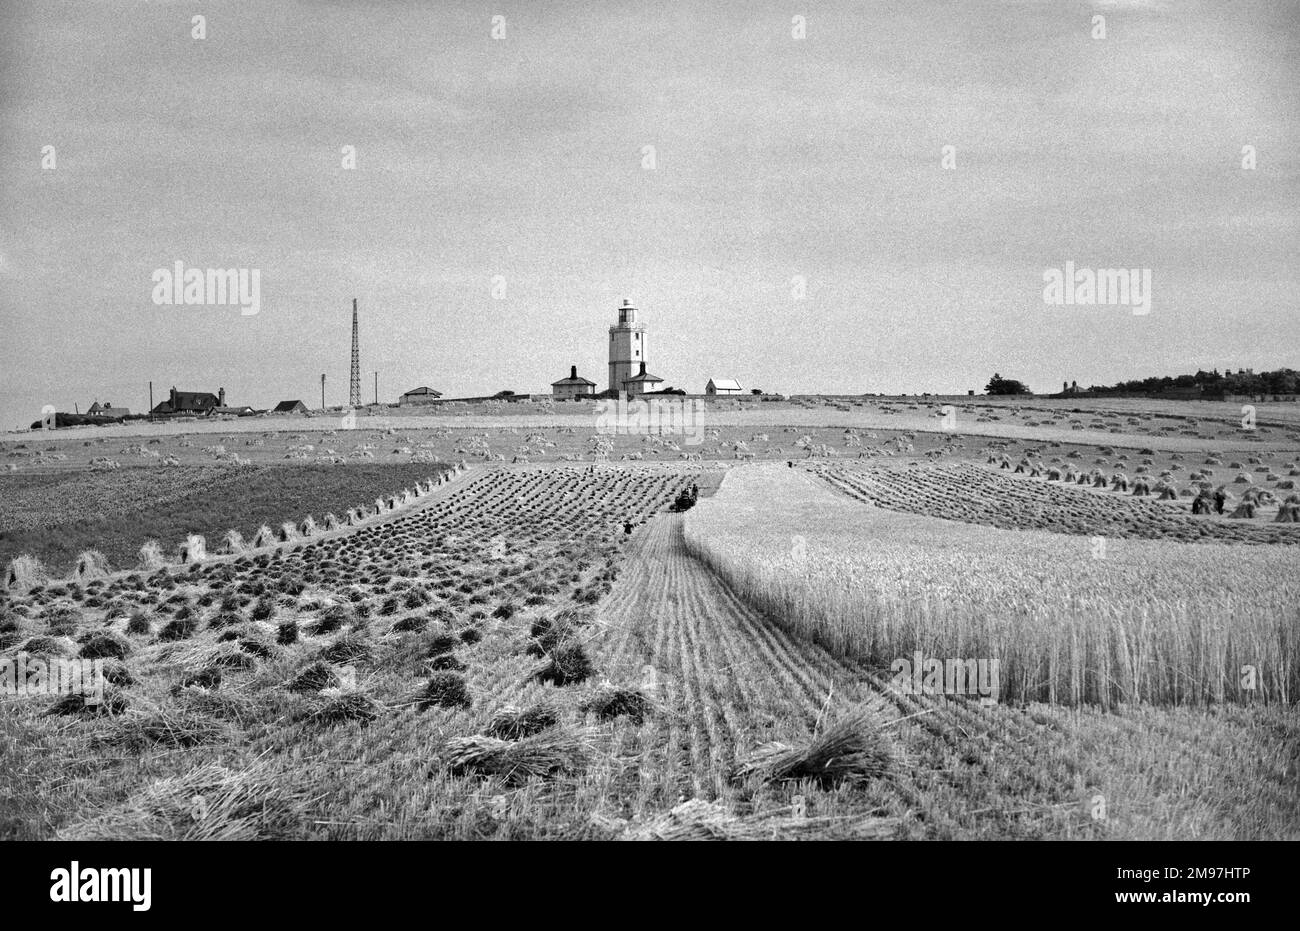 Un champ de maïs partiellement récolté, avec un phare et des bâtiments de ferme à l'horizon. Banque D'Images